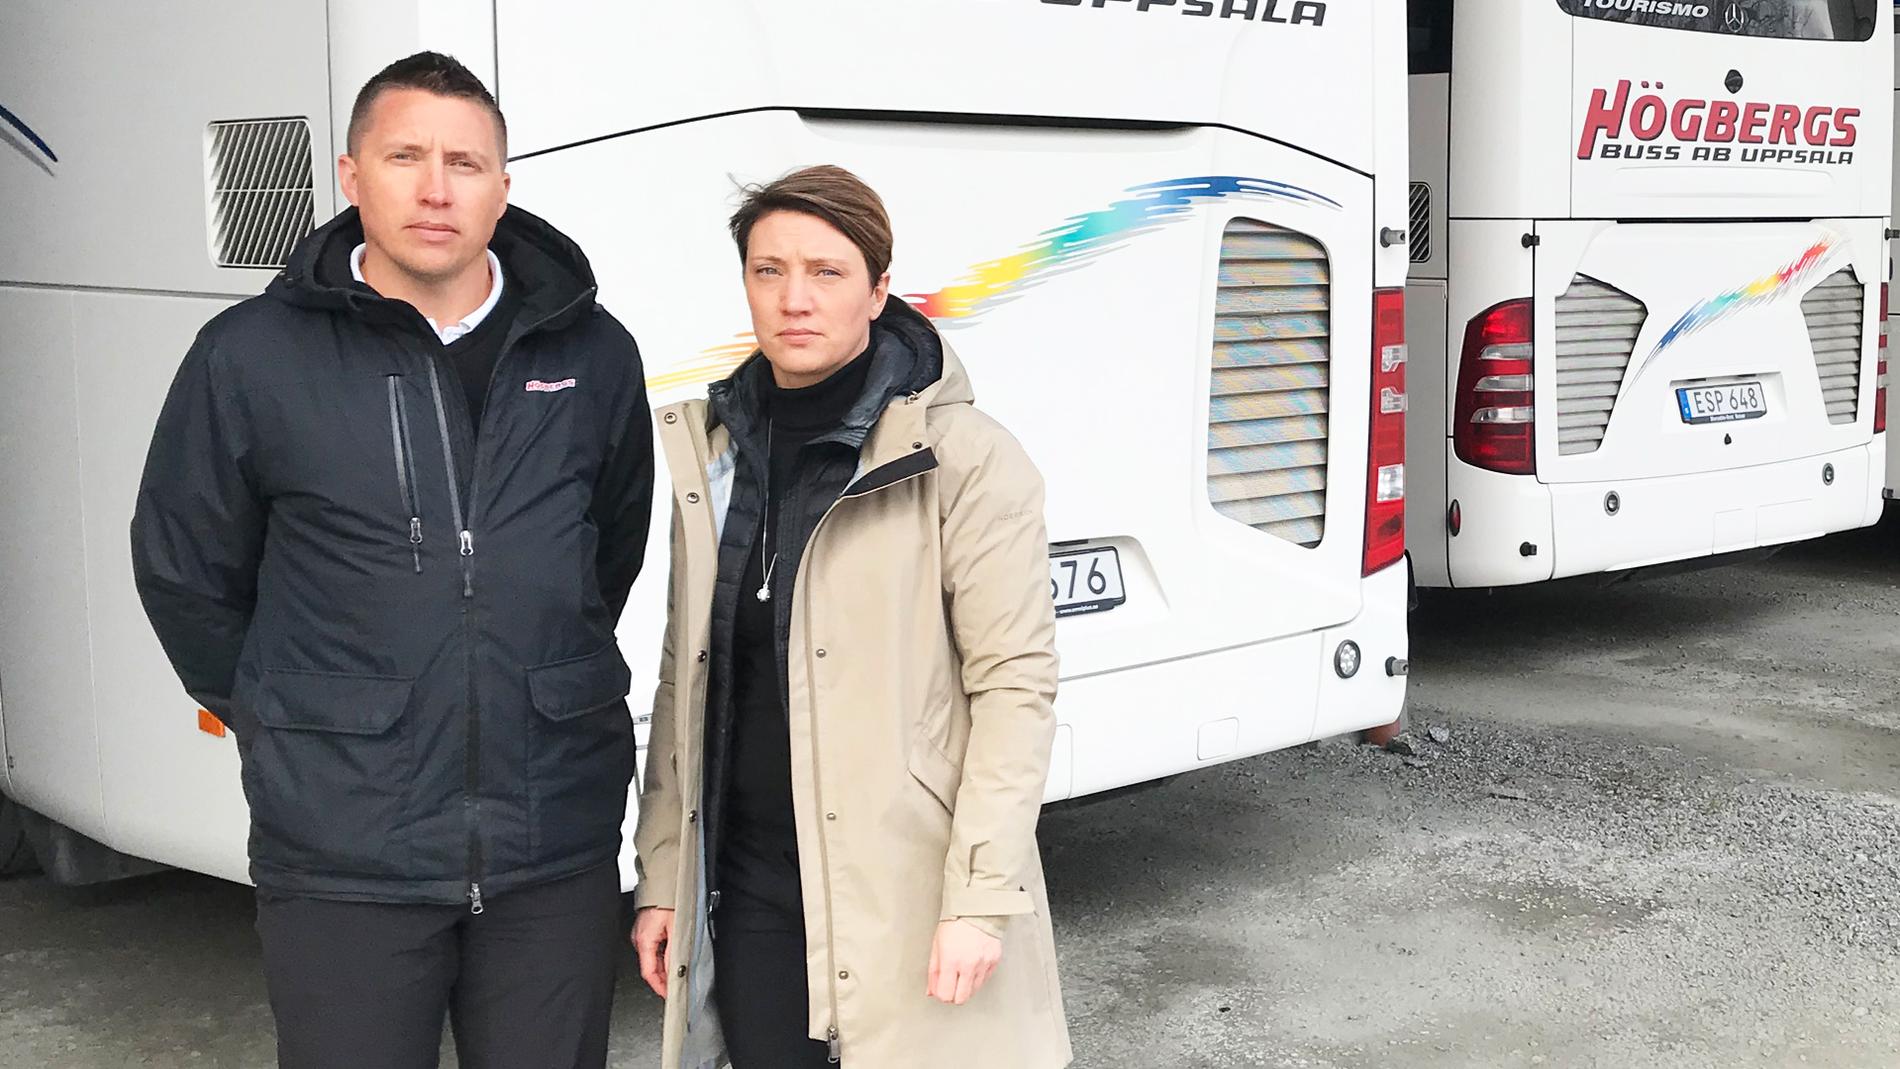 Tvillingarna Henrik- och Jennie Högberg framför några av de bussar som nu är avställda på grund av krisen.